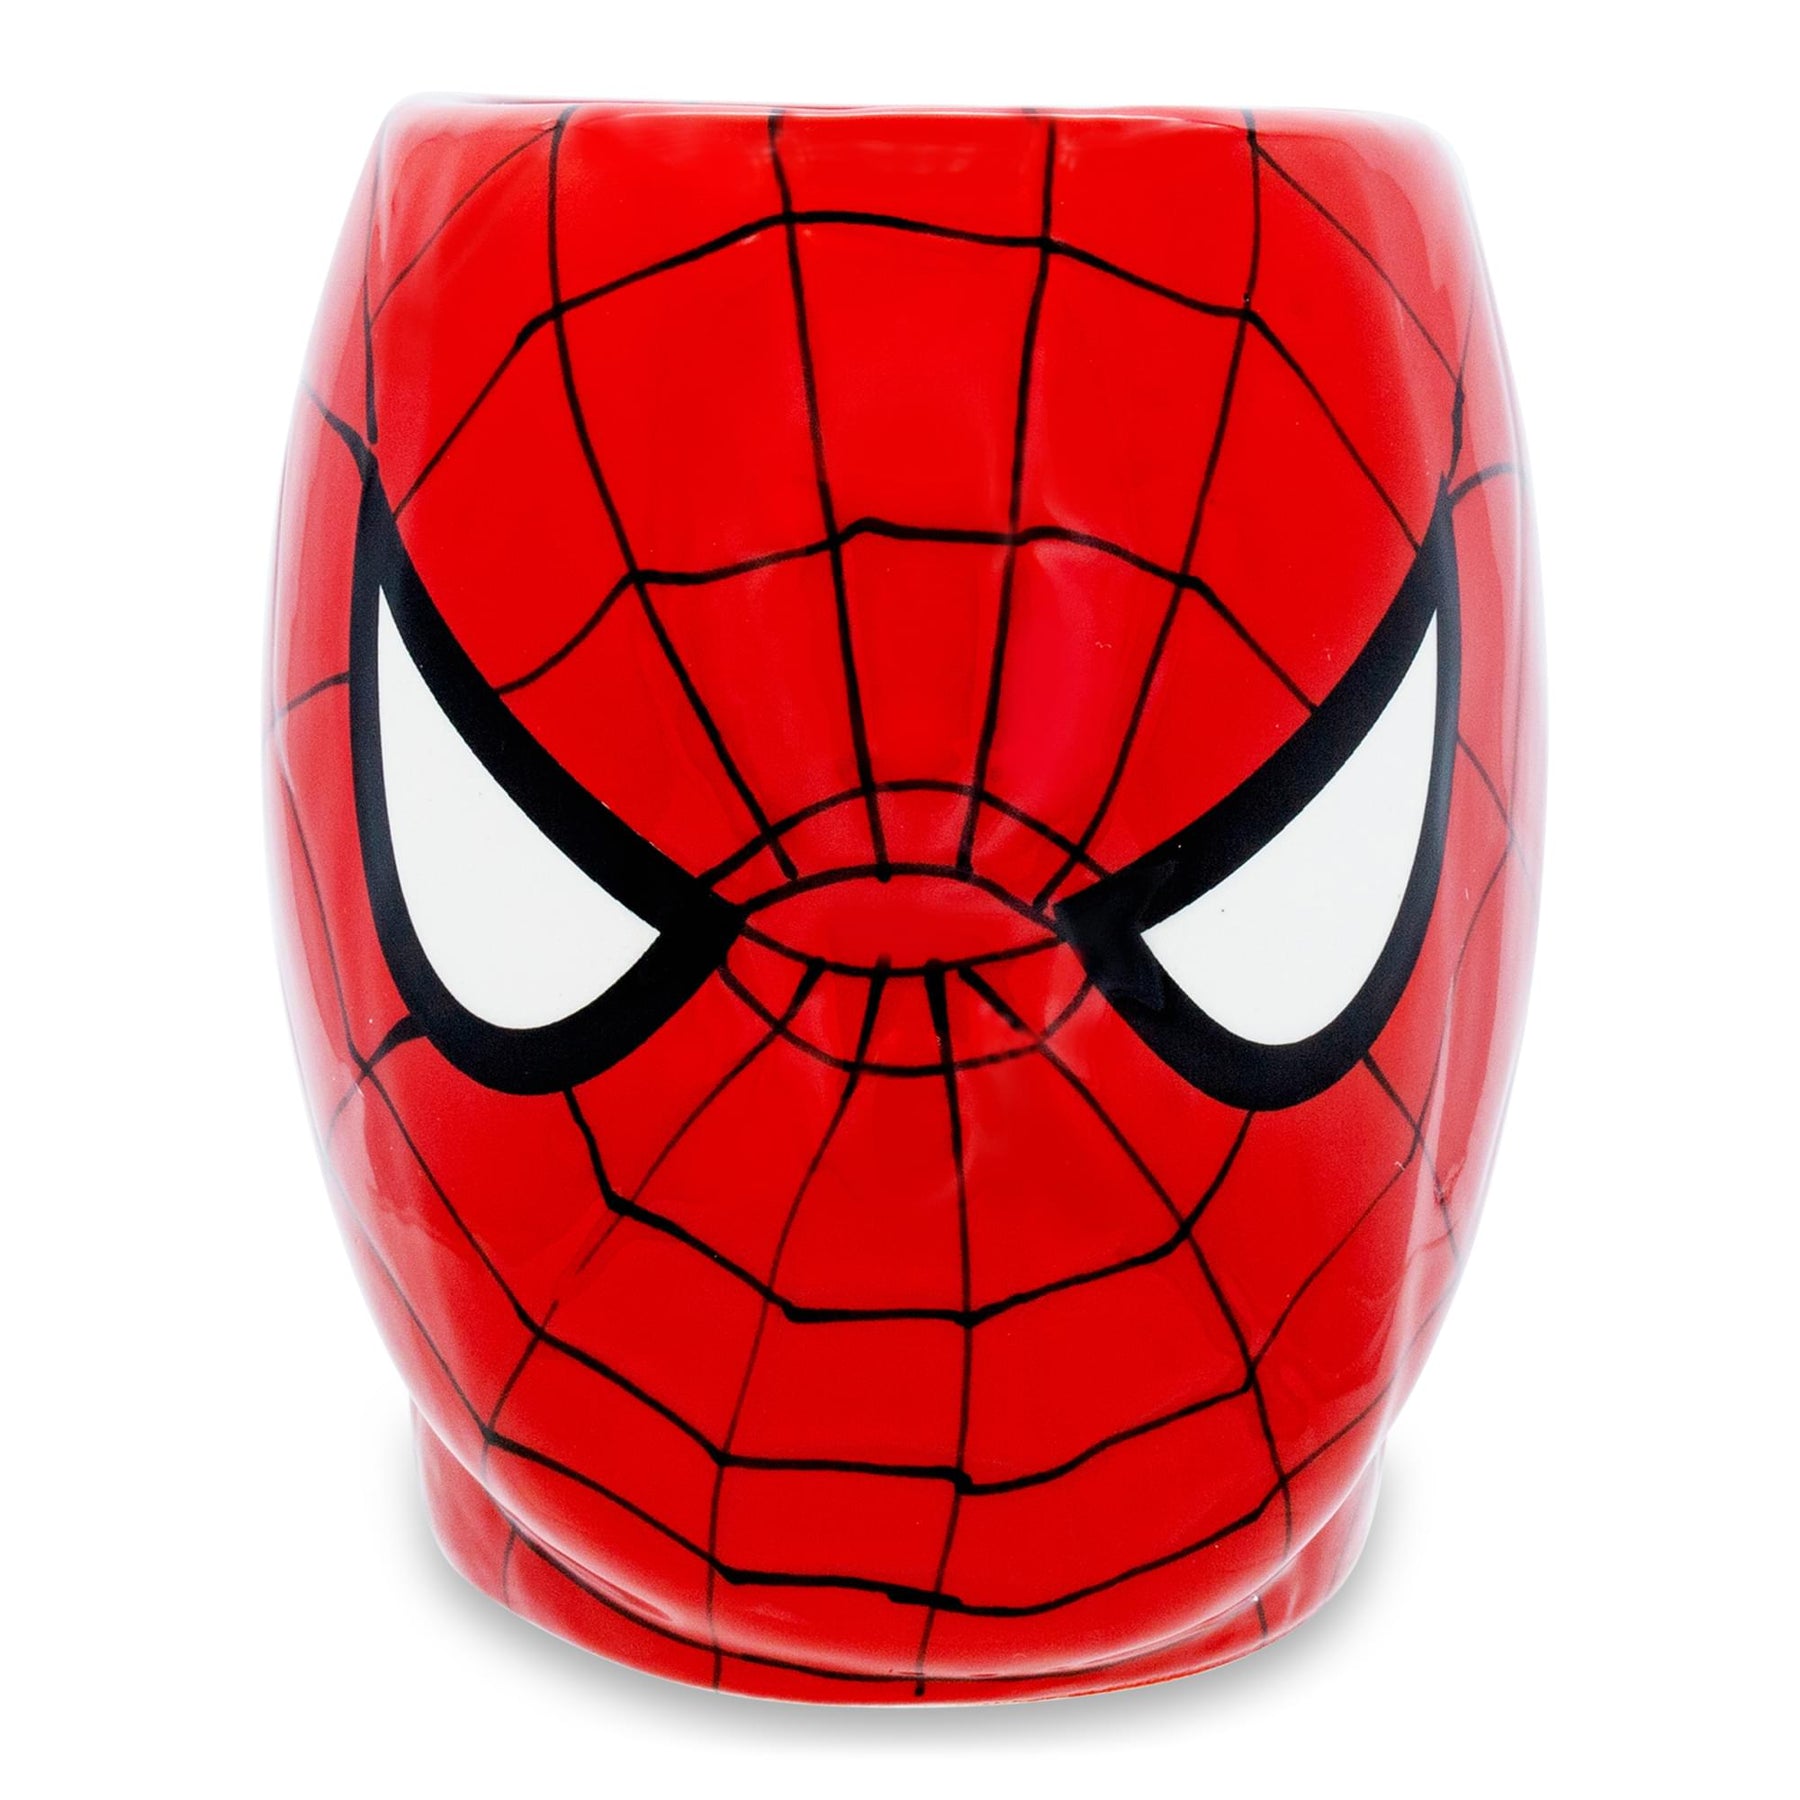 Marvel Spider-Man 20oz Ceramic Sculpted Mug